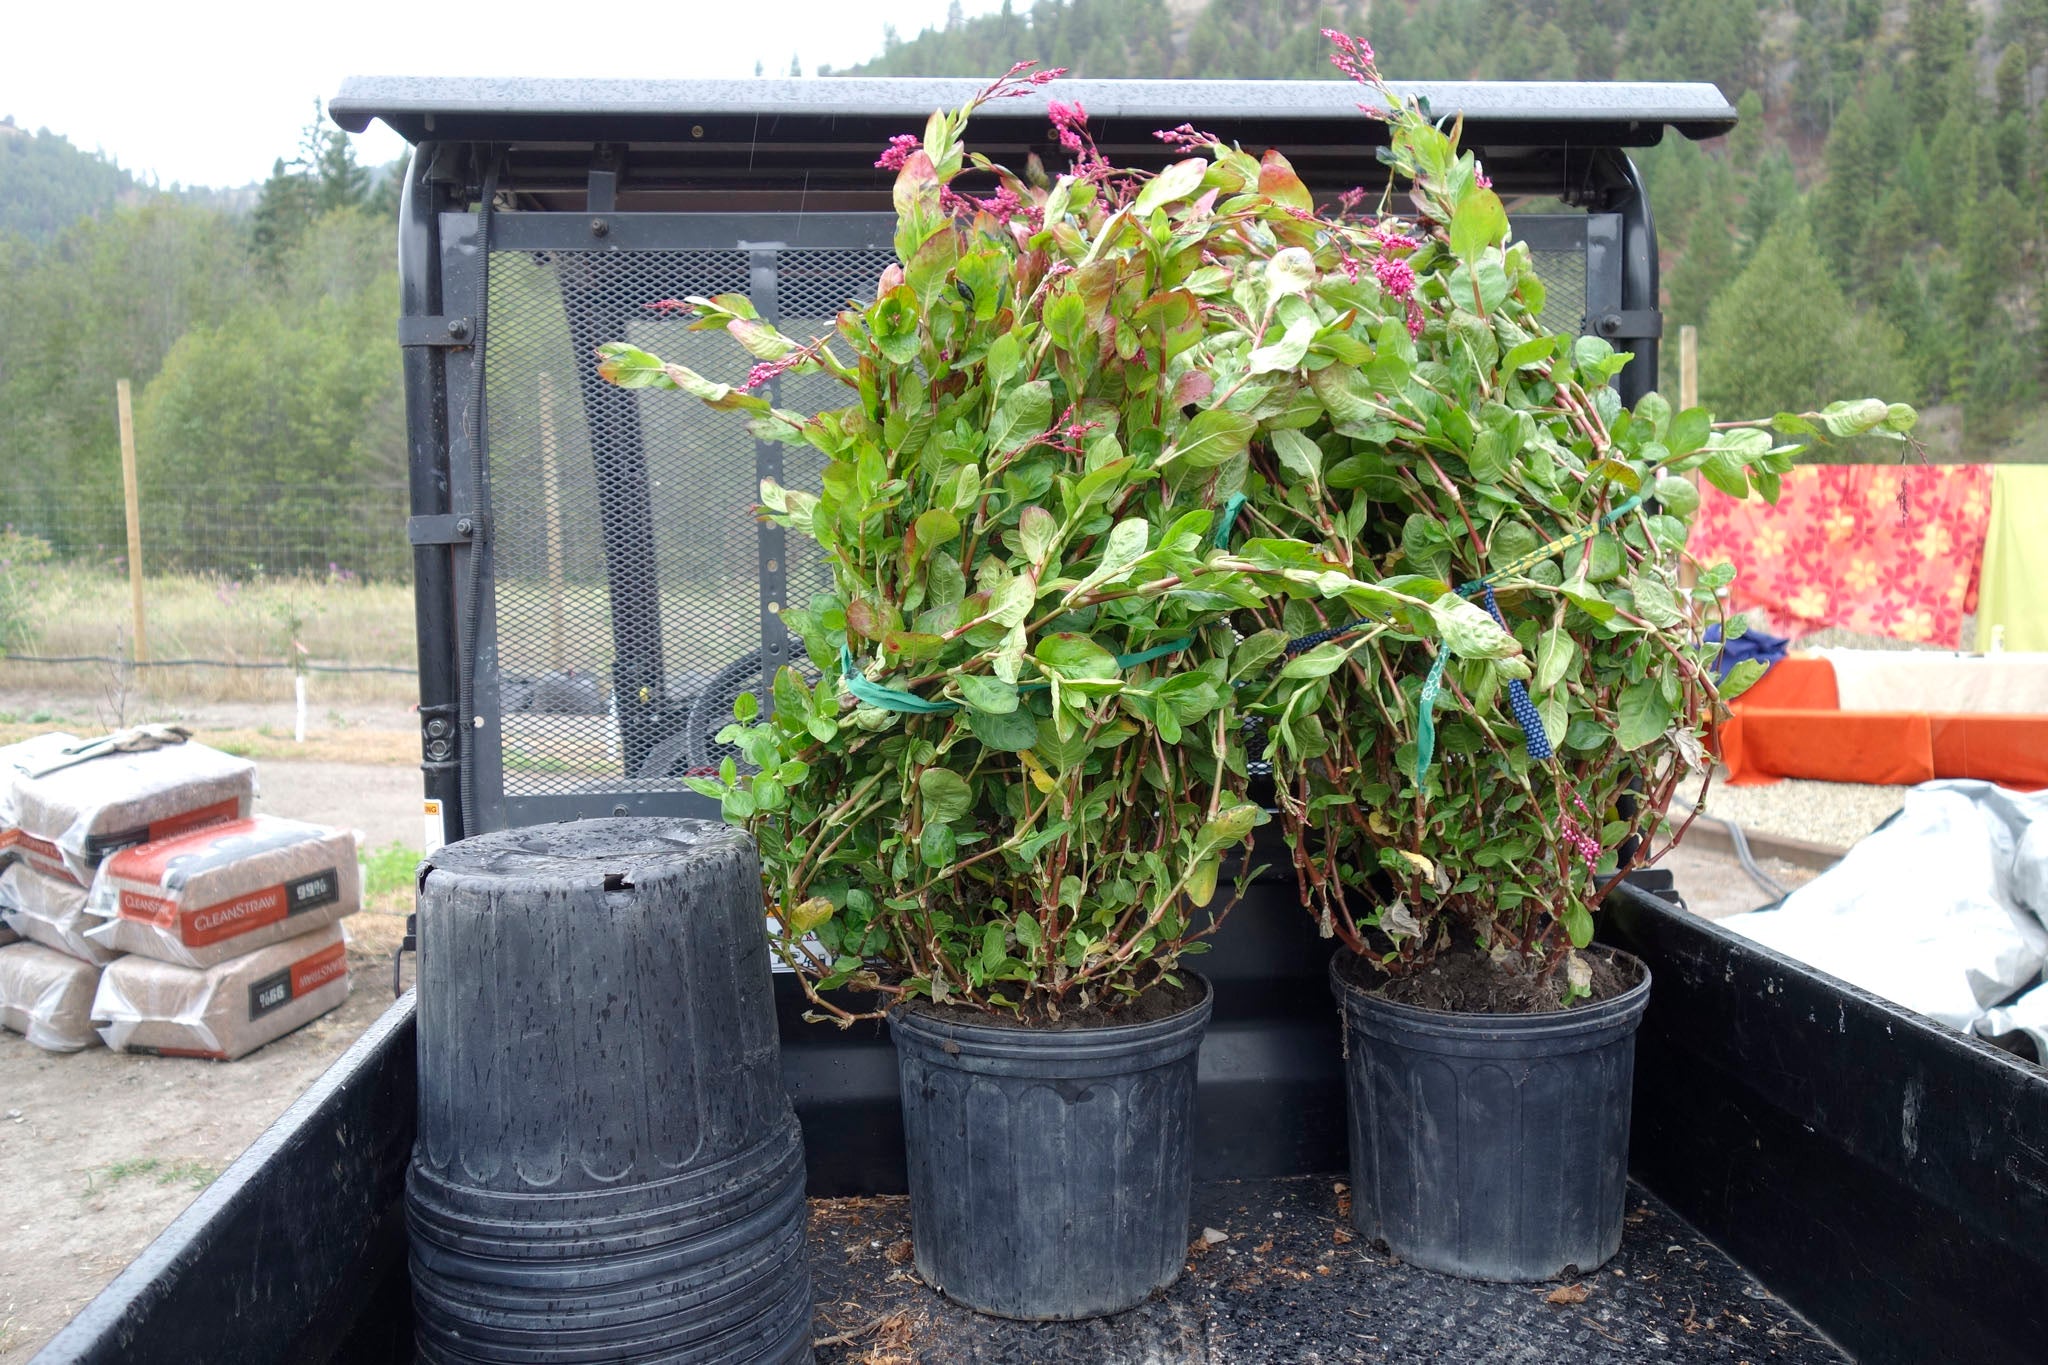 Transplanting flowering indigo plants at Okan Arts Farm, September 2021